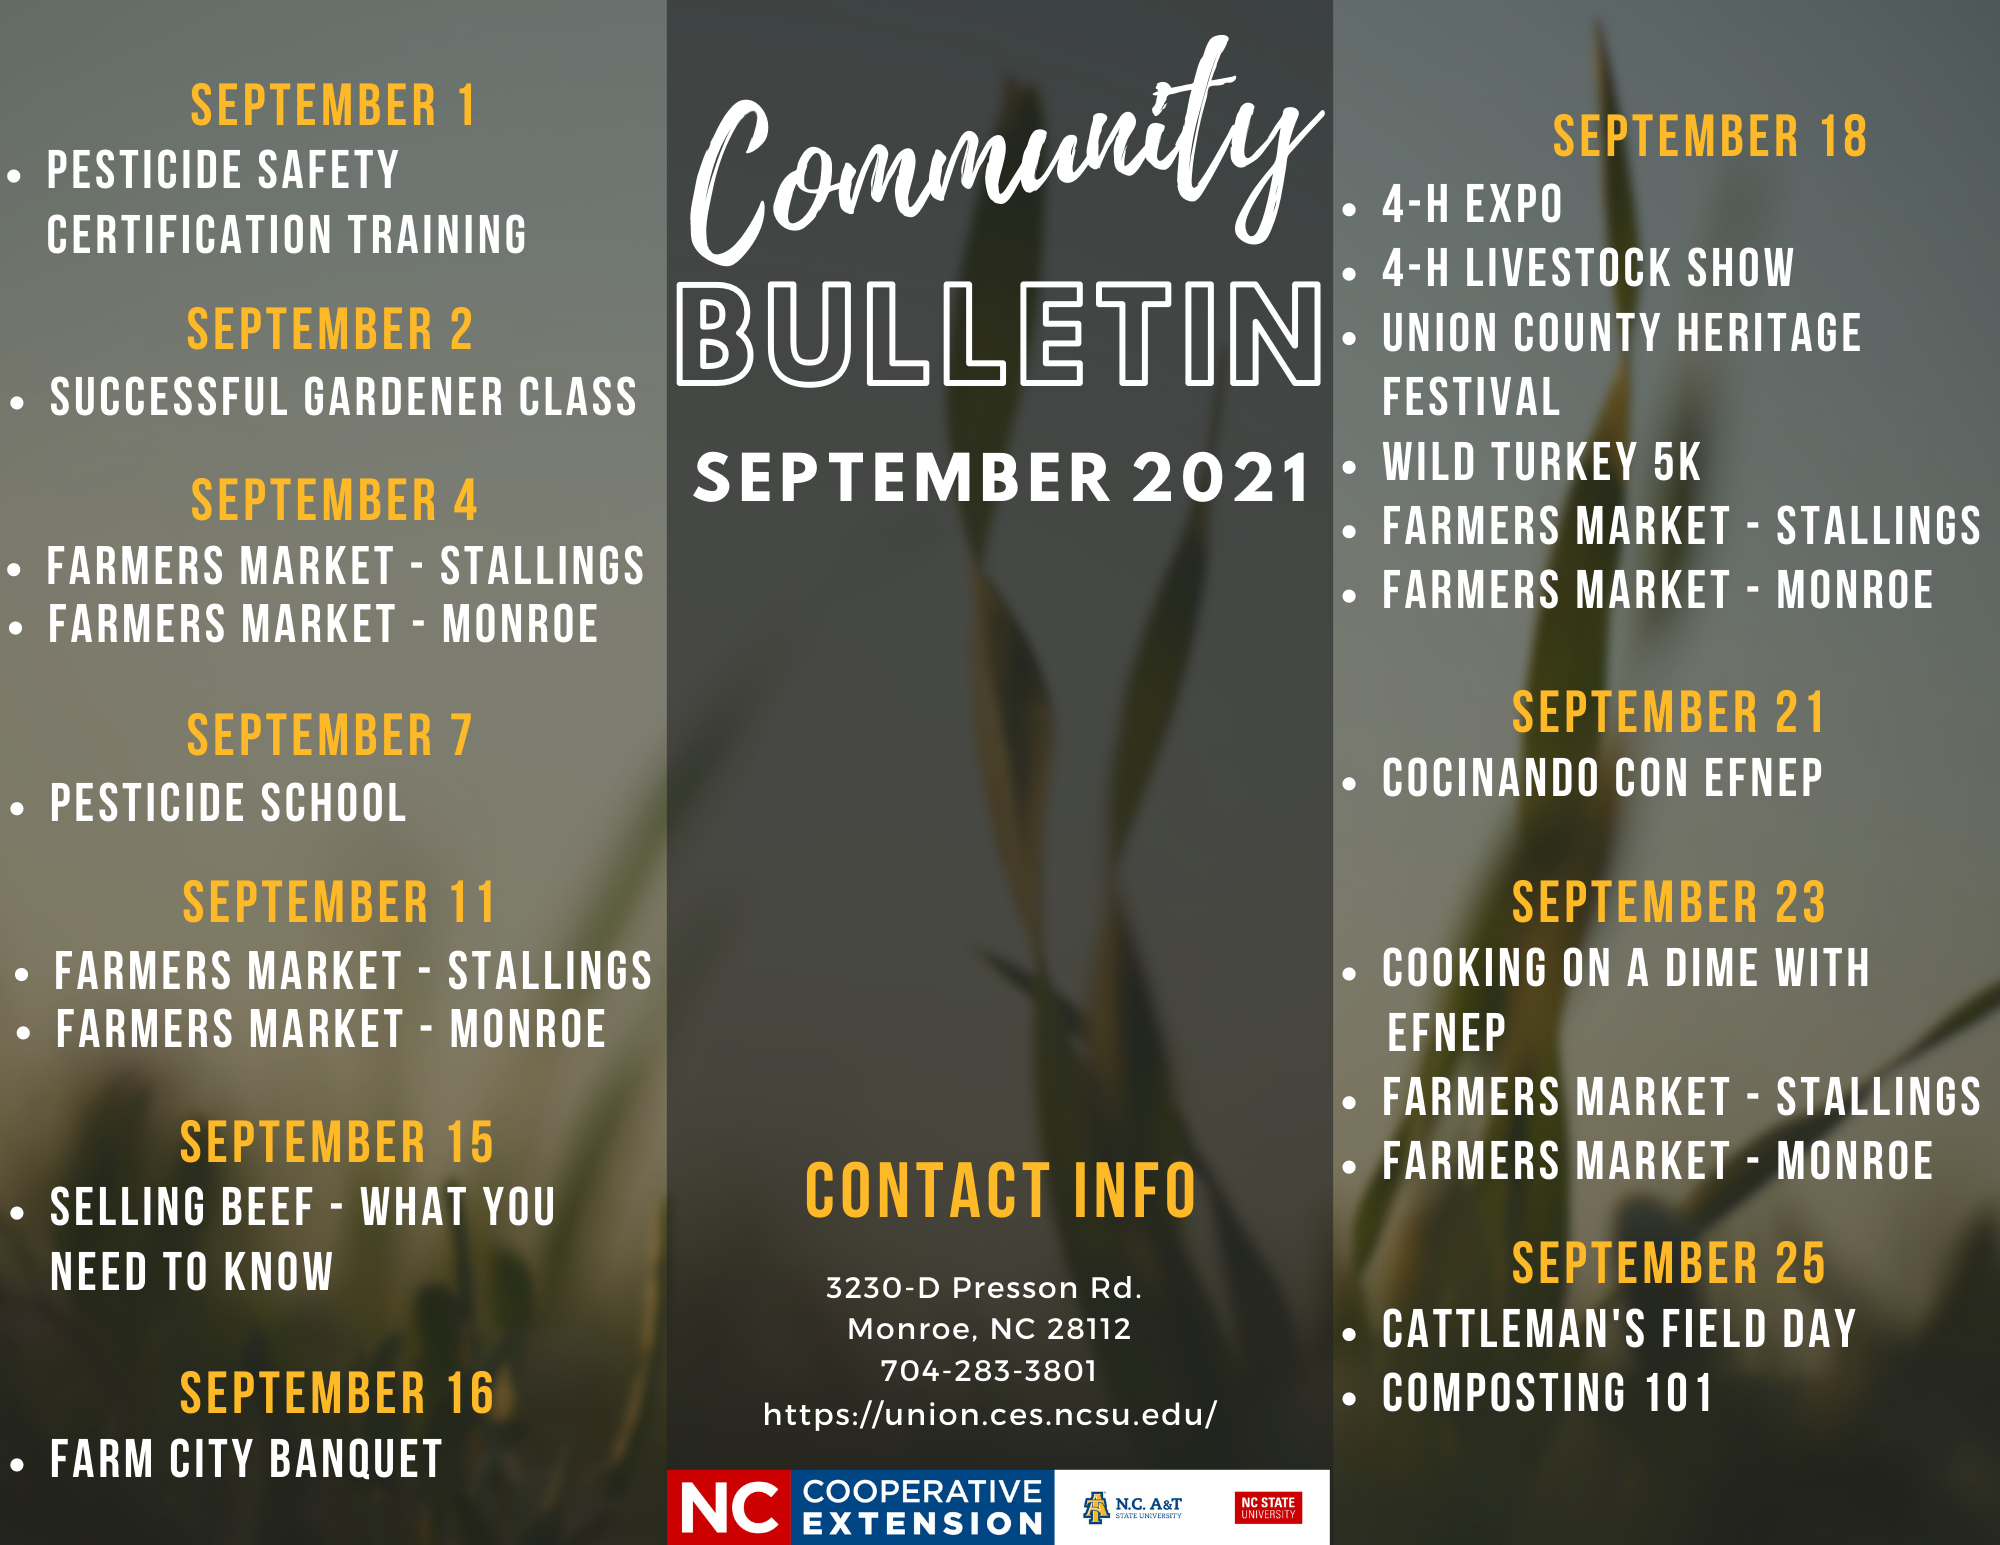 Bulletin Events for September 2021